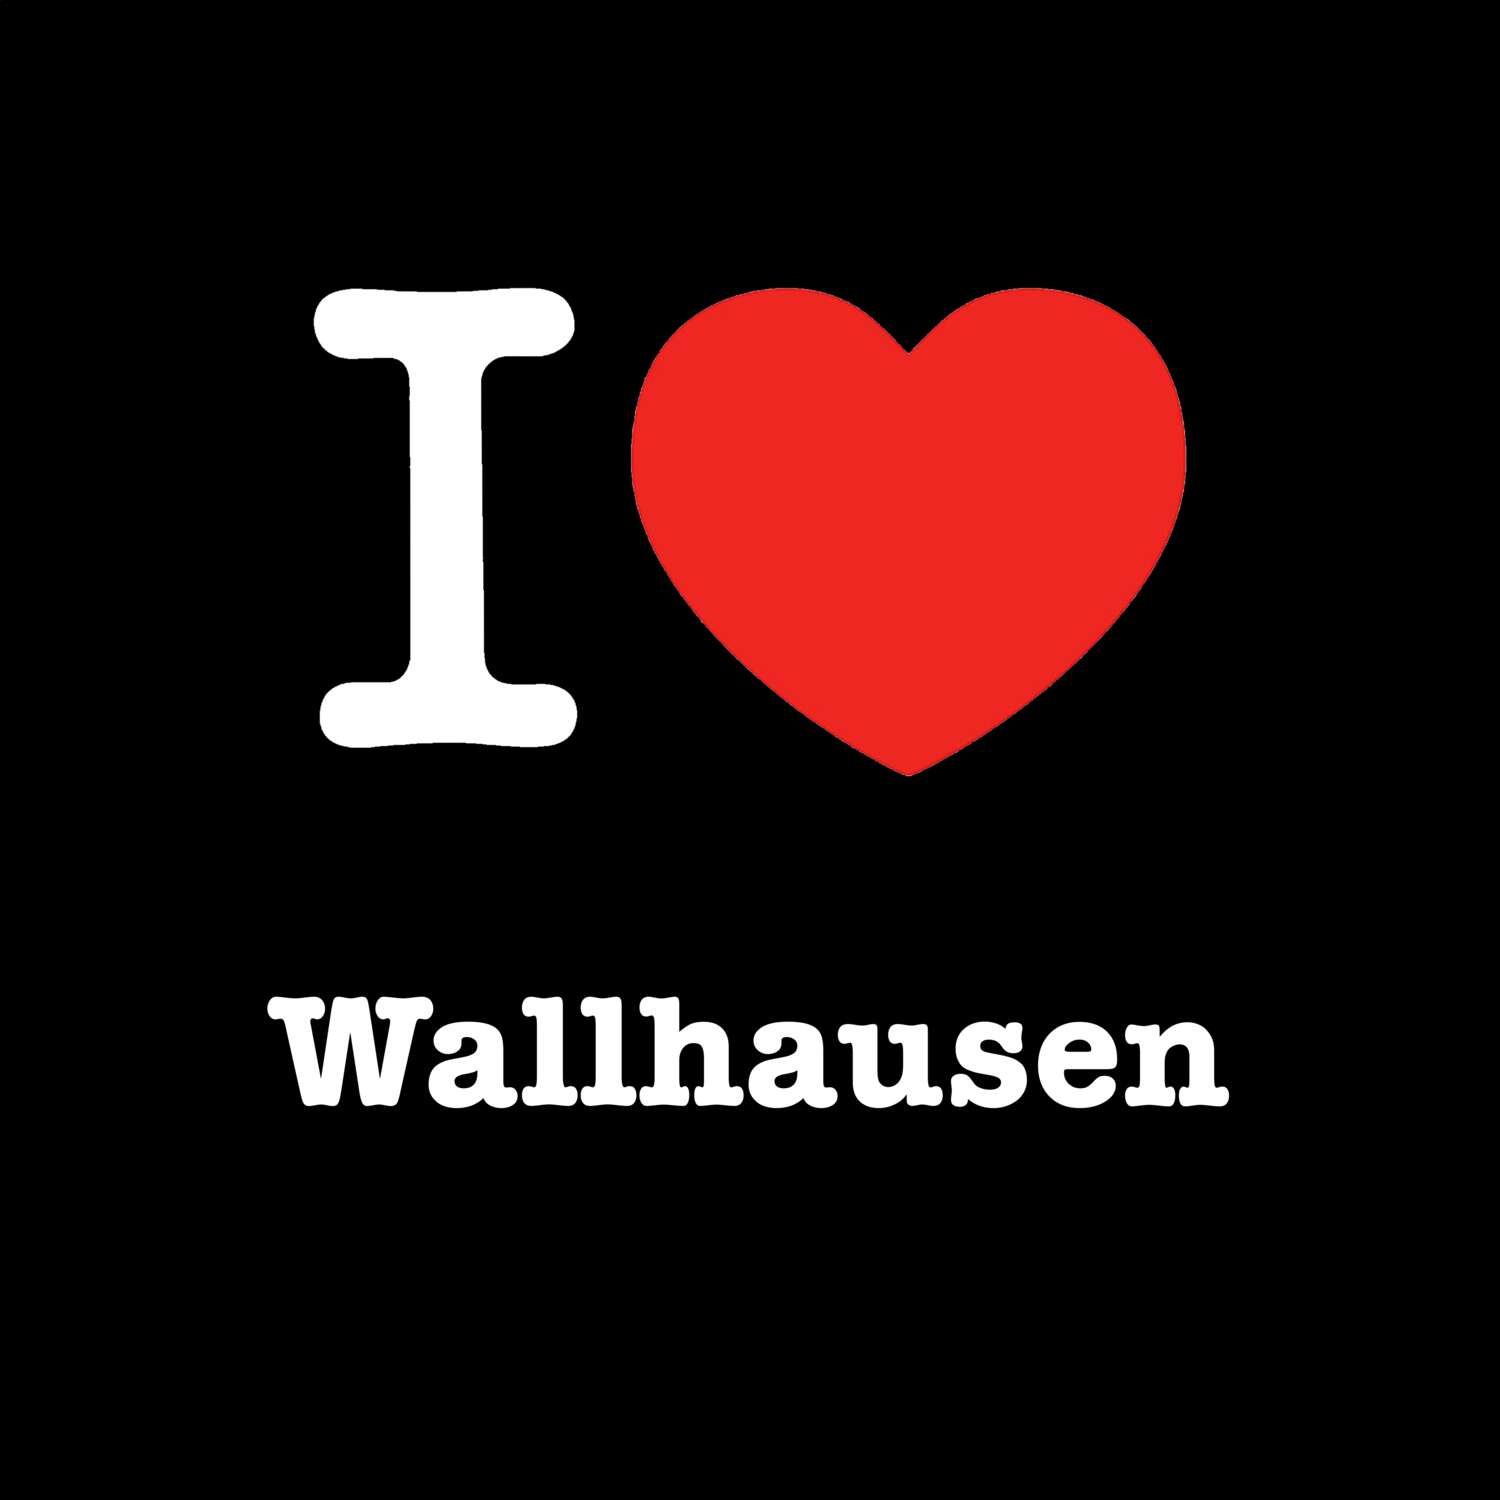 Wallhausen T-Shirt »I love«